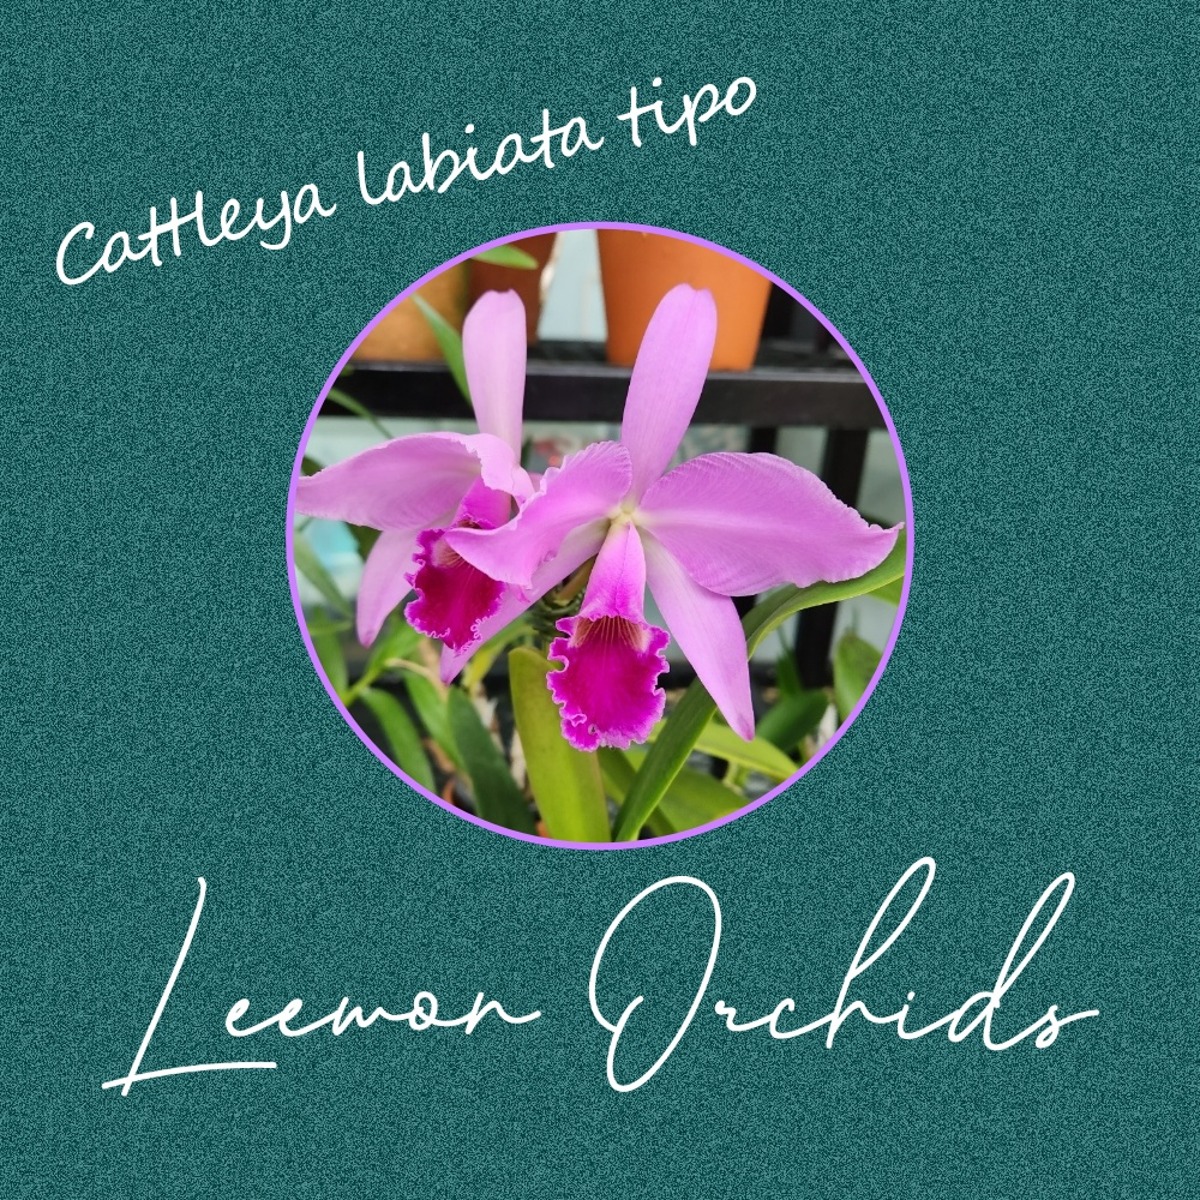 카틀레야 라비아타 티포 Cattleya labiata tipo (화포 O/ 온라인 한정재고: 1)